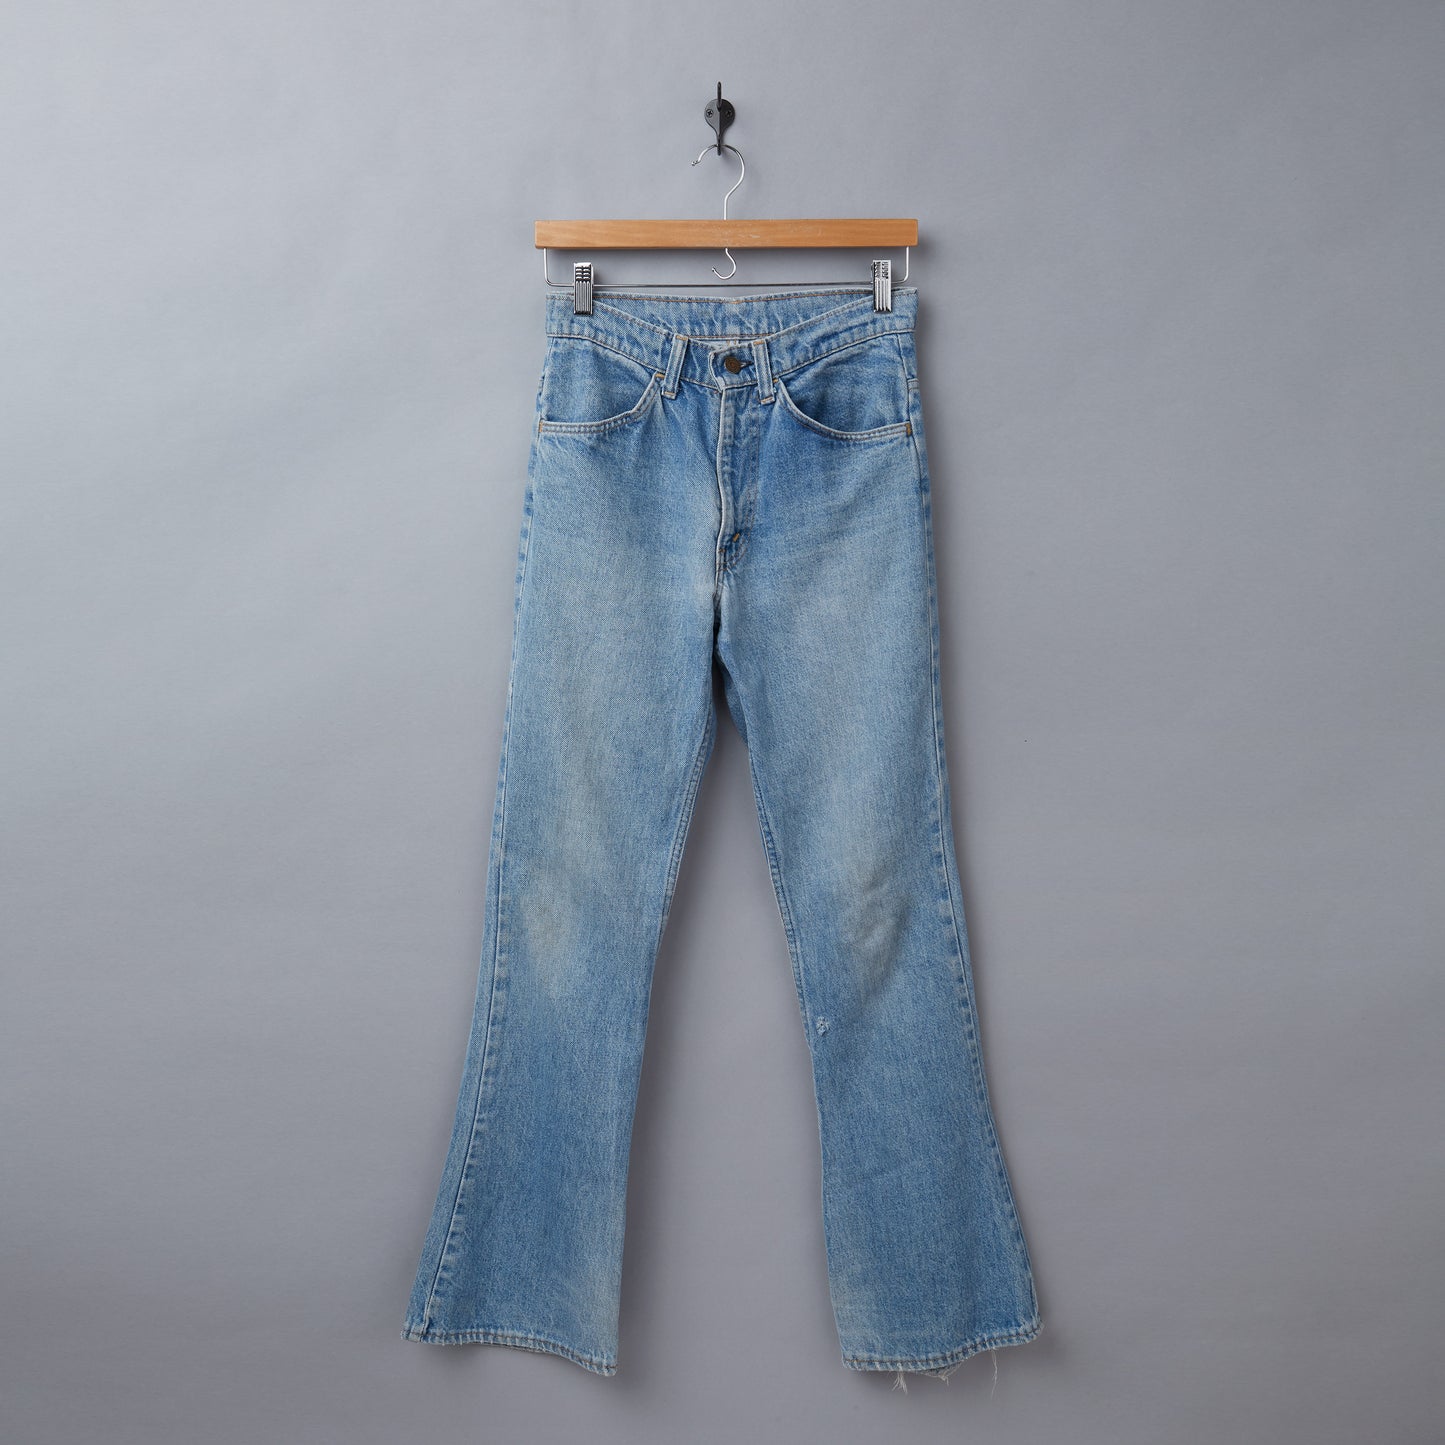 Levis Jeans #2